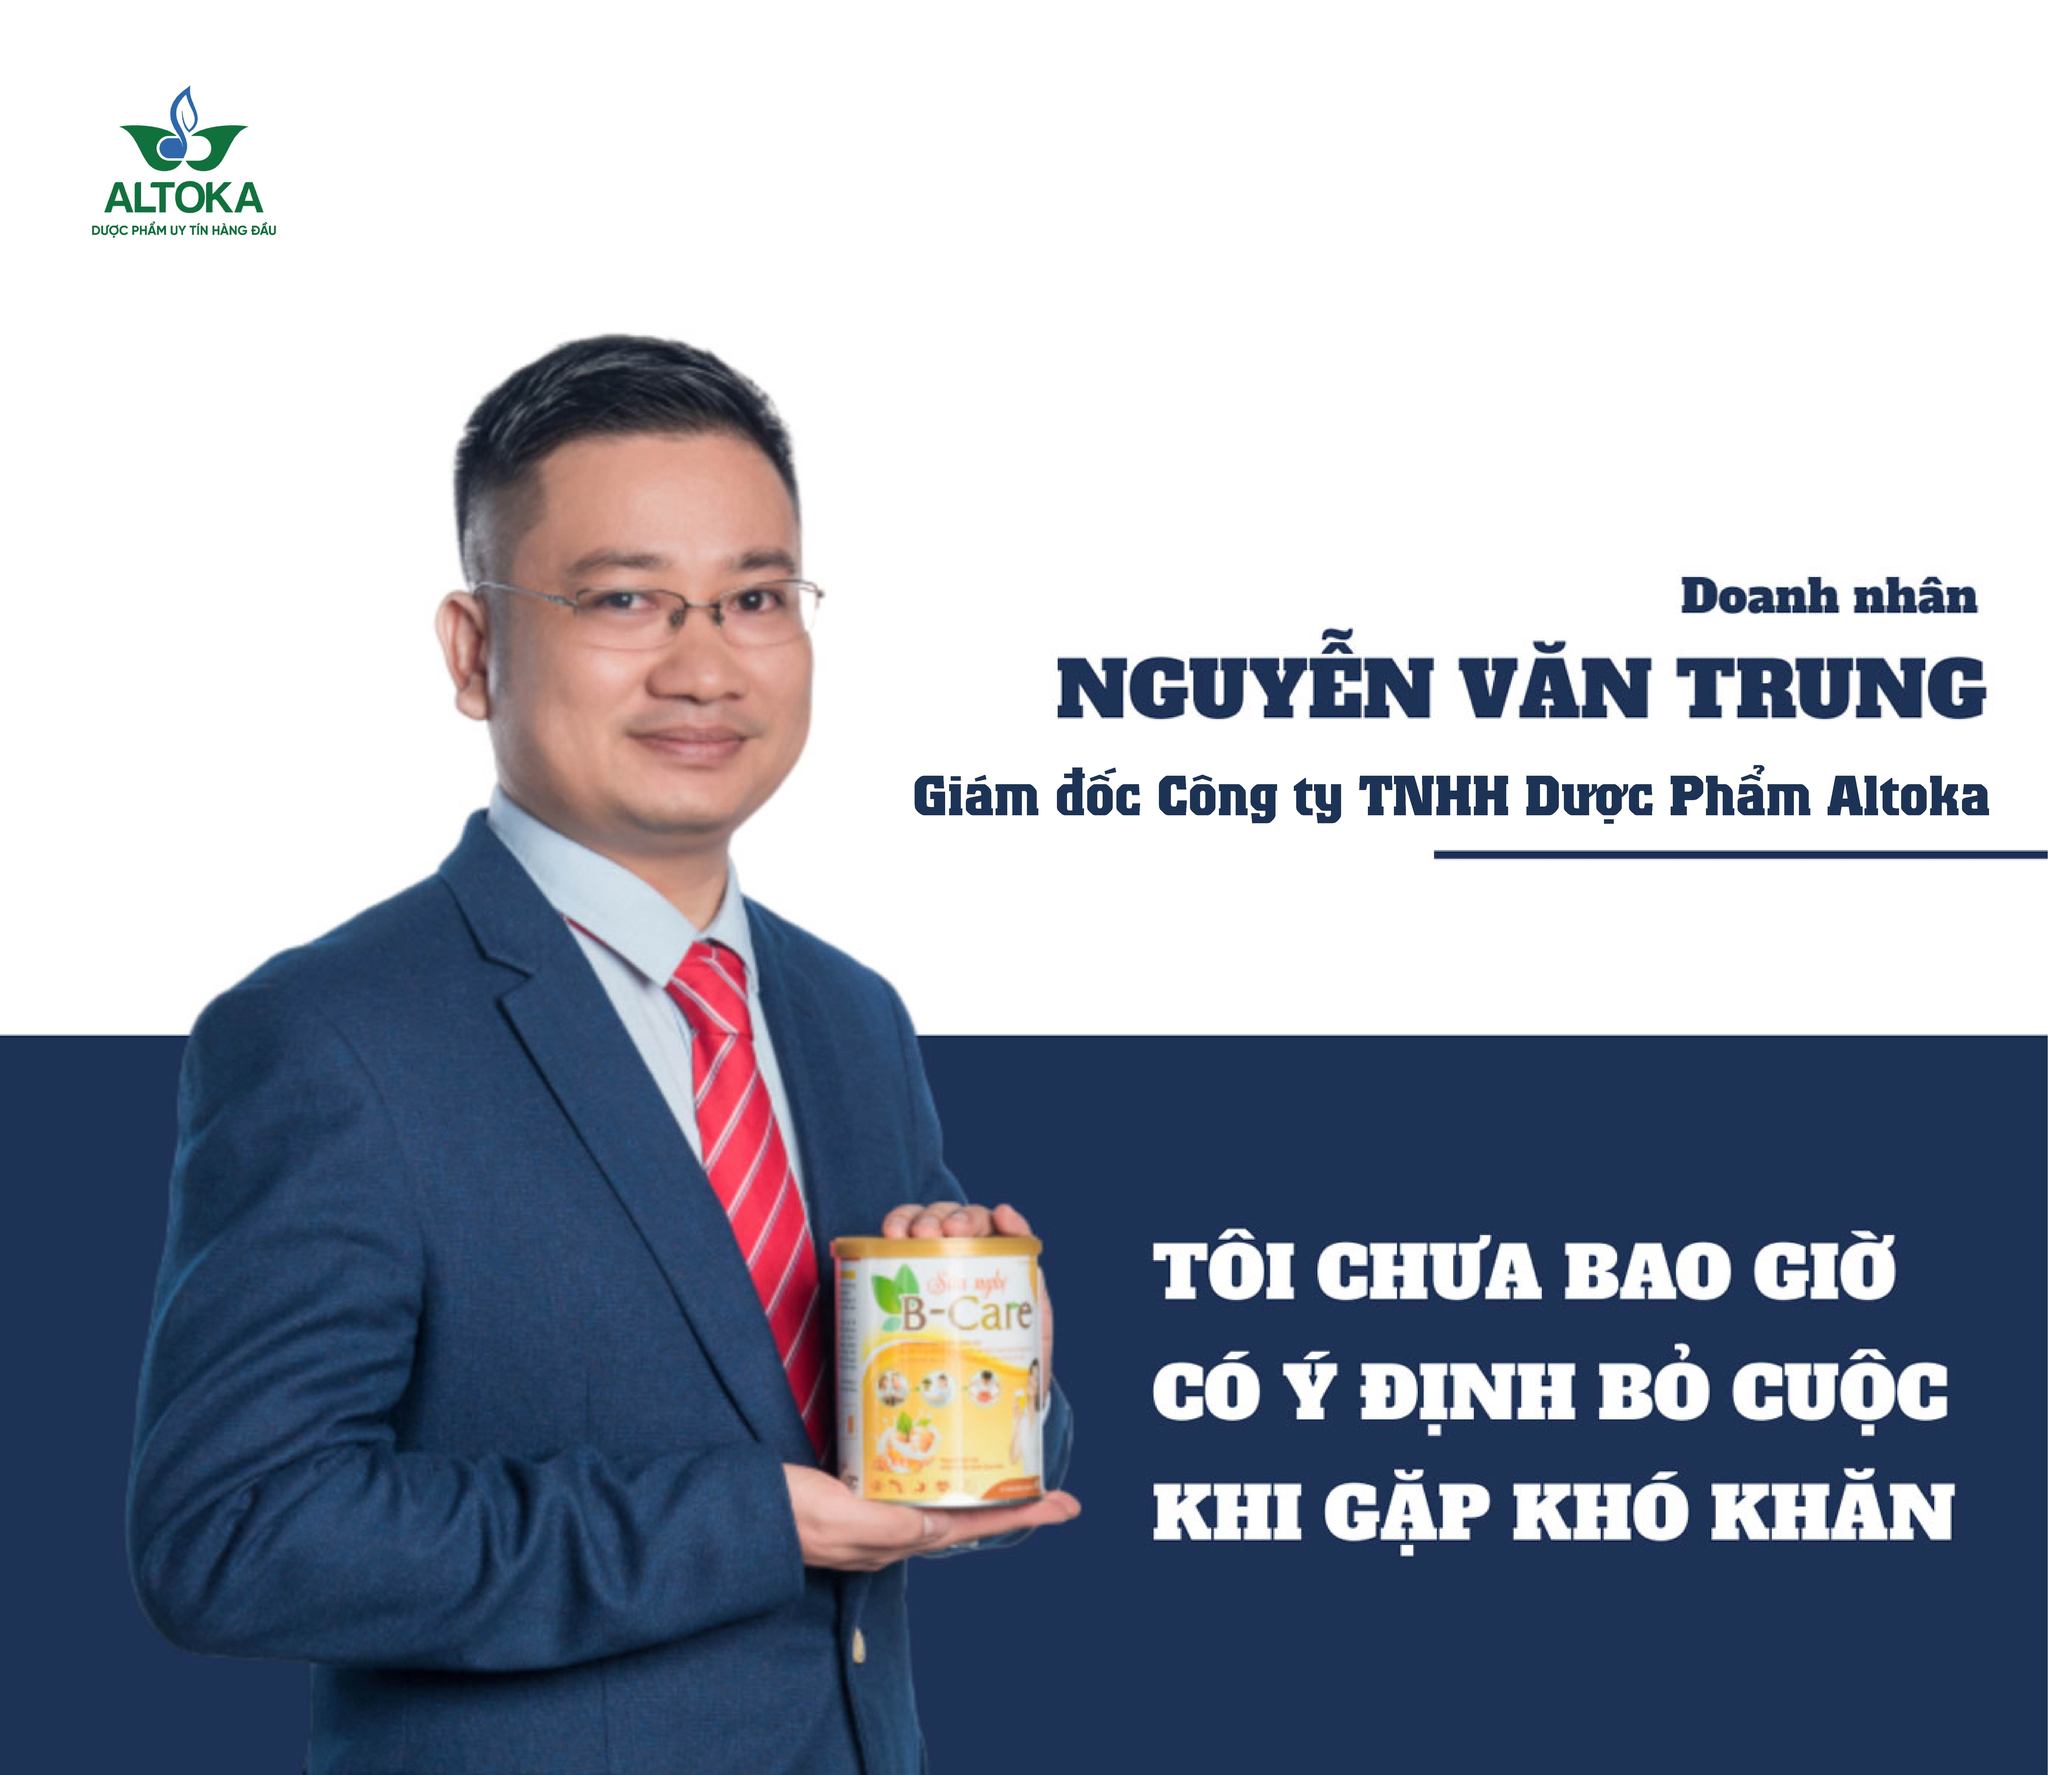 Sữa nghệ B care - Niềm tự hào của người Việt!